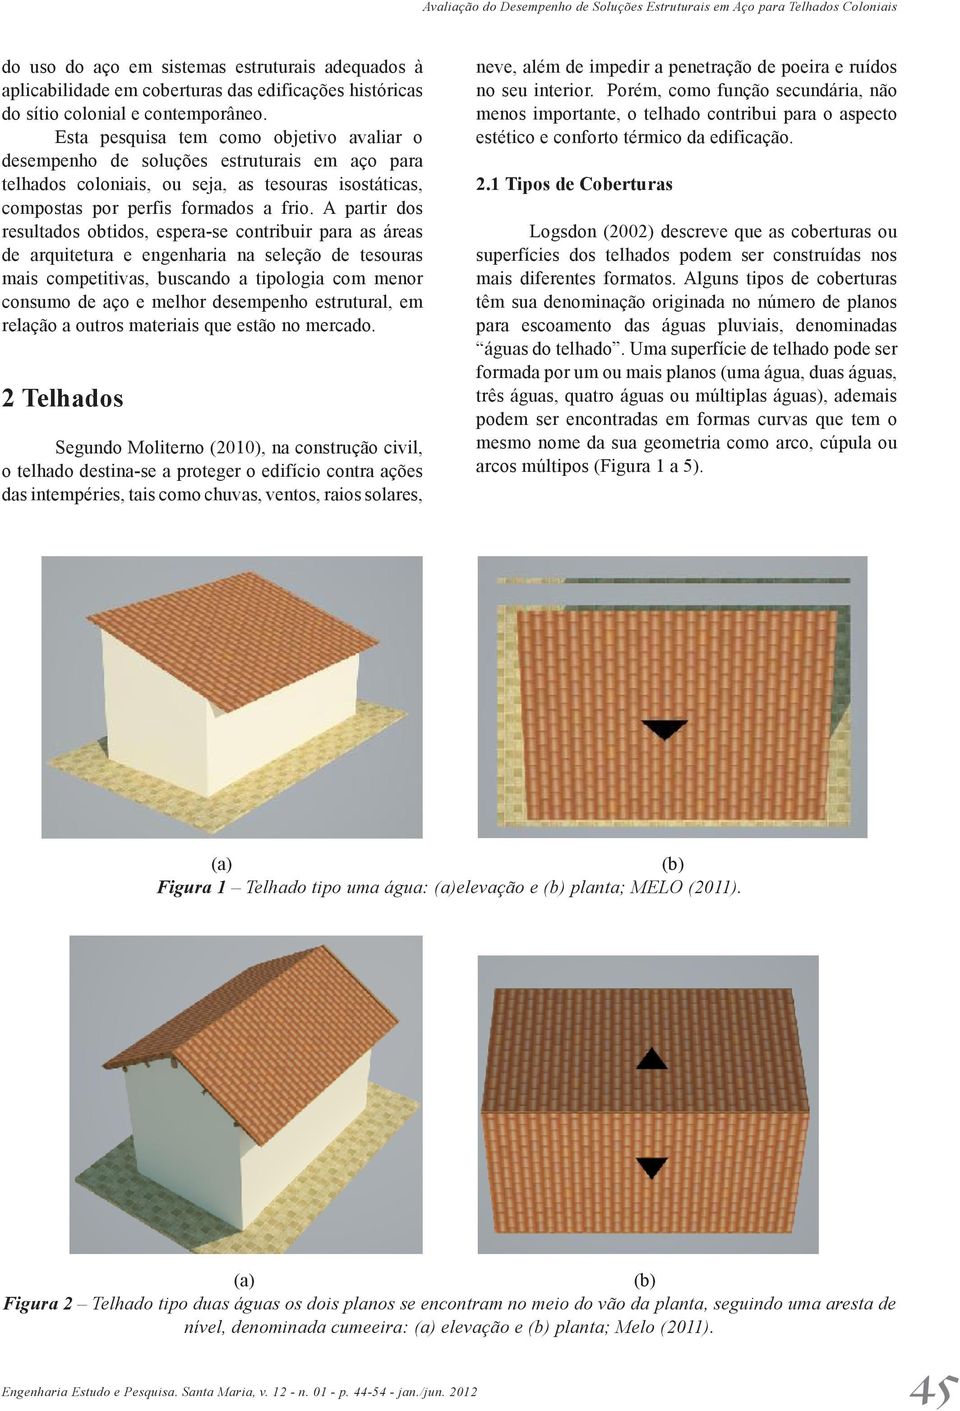 Esta pesquisa tem como objetivo avaliar o desempenho de soluções estruturais em aço para telhados coloniais, ou seja, as tesouras isostáticas, compostas por perfis formados a frio.